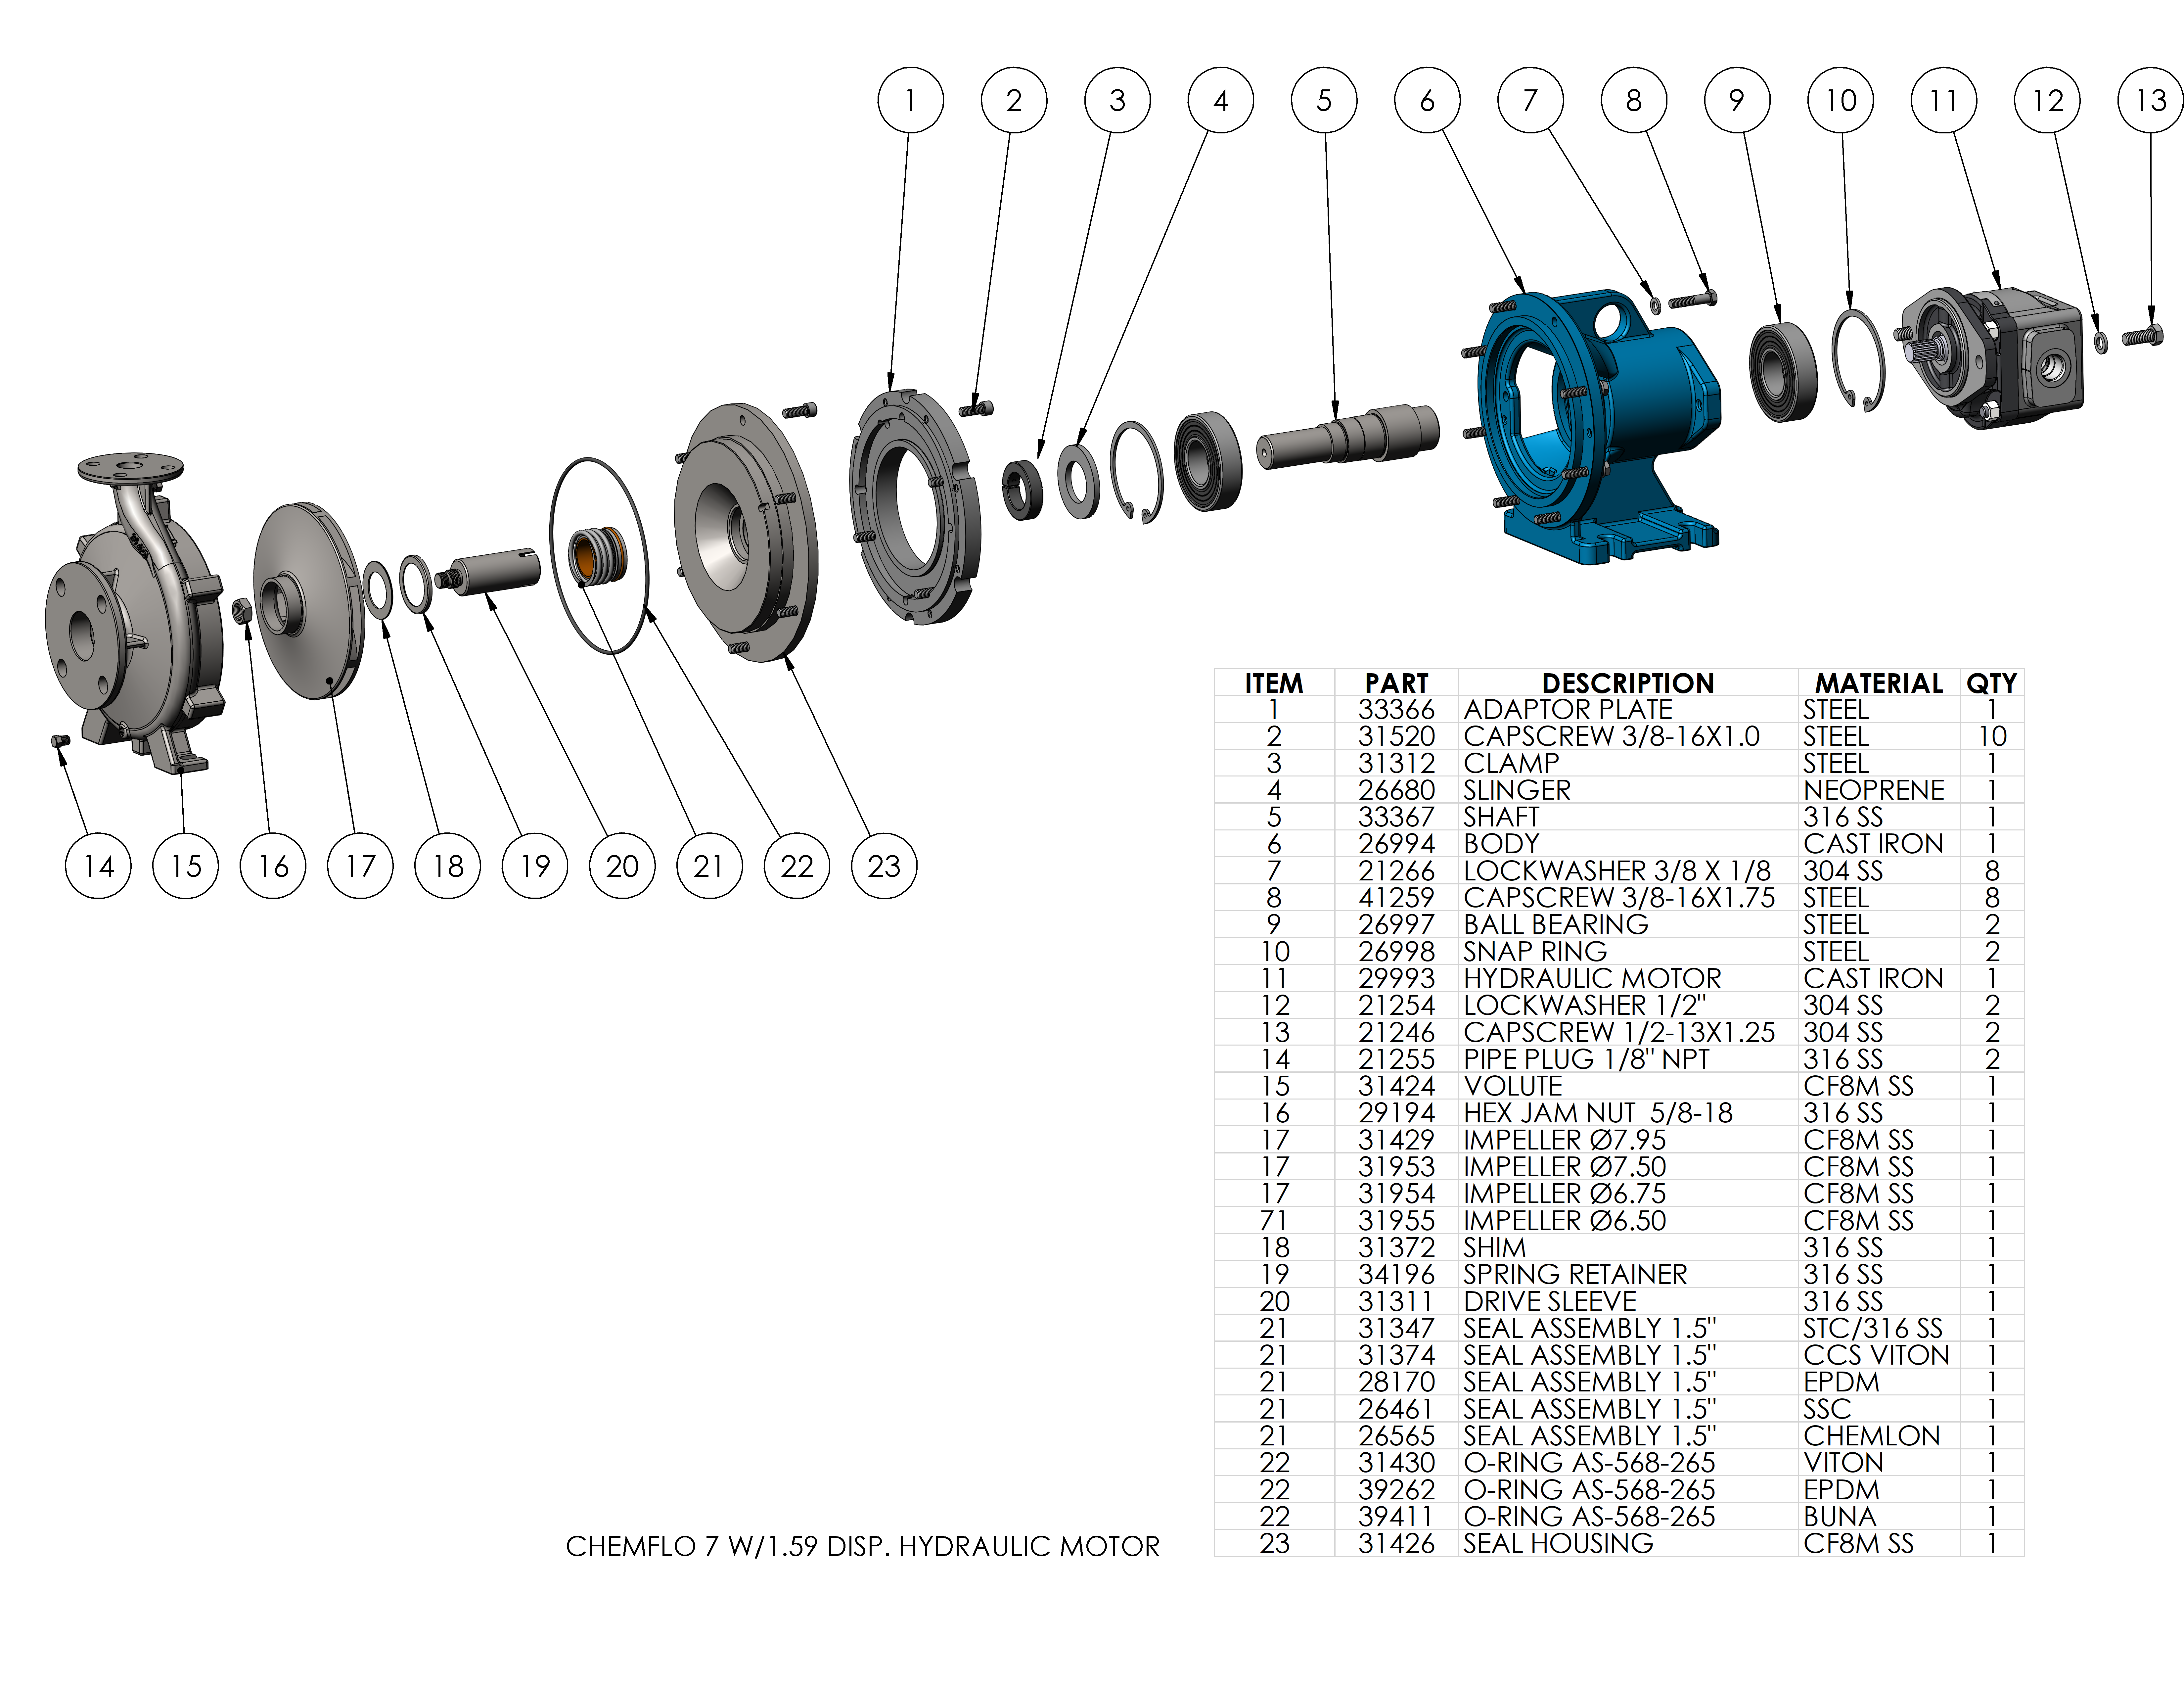 chemflo-7-hydraulic_parts-list-chemflo-7-w-1-59-disp-hydraulic-motor